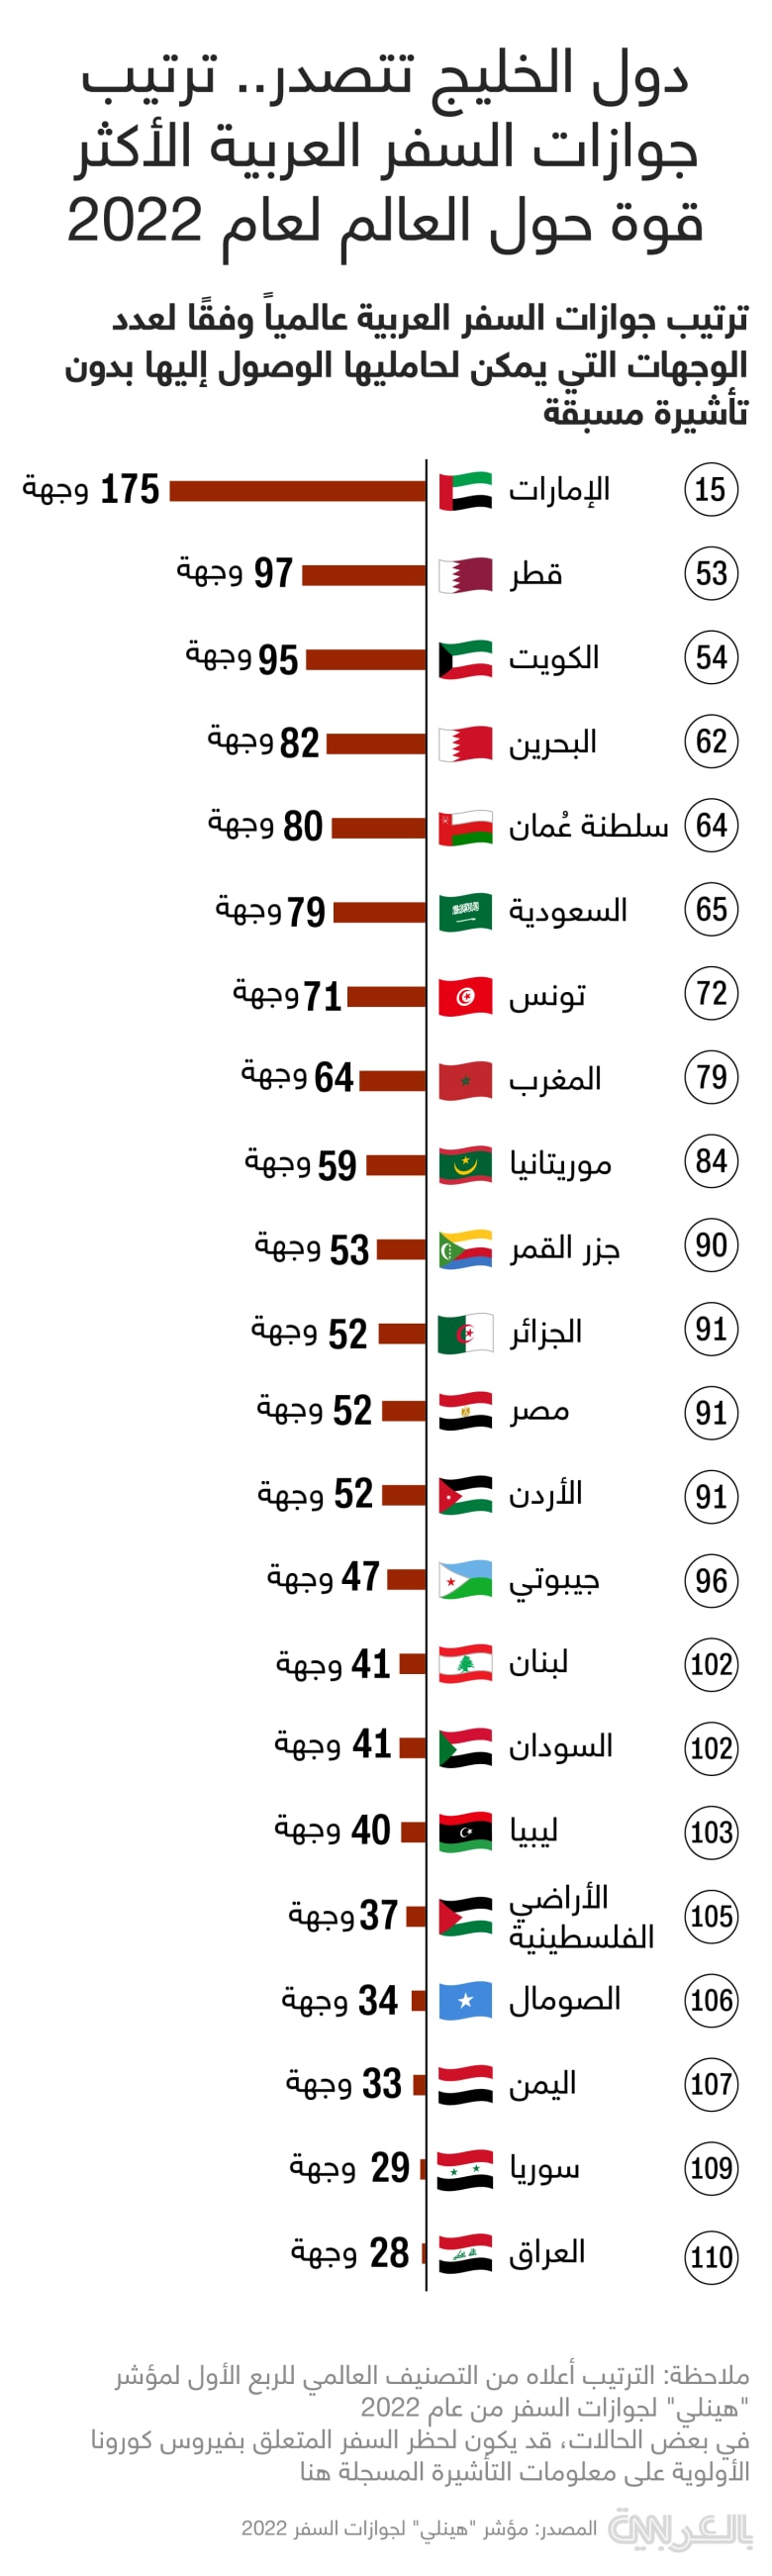 Arab-passport-index-2022